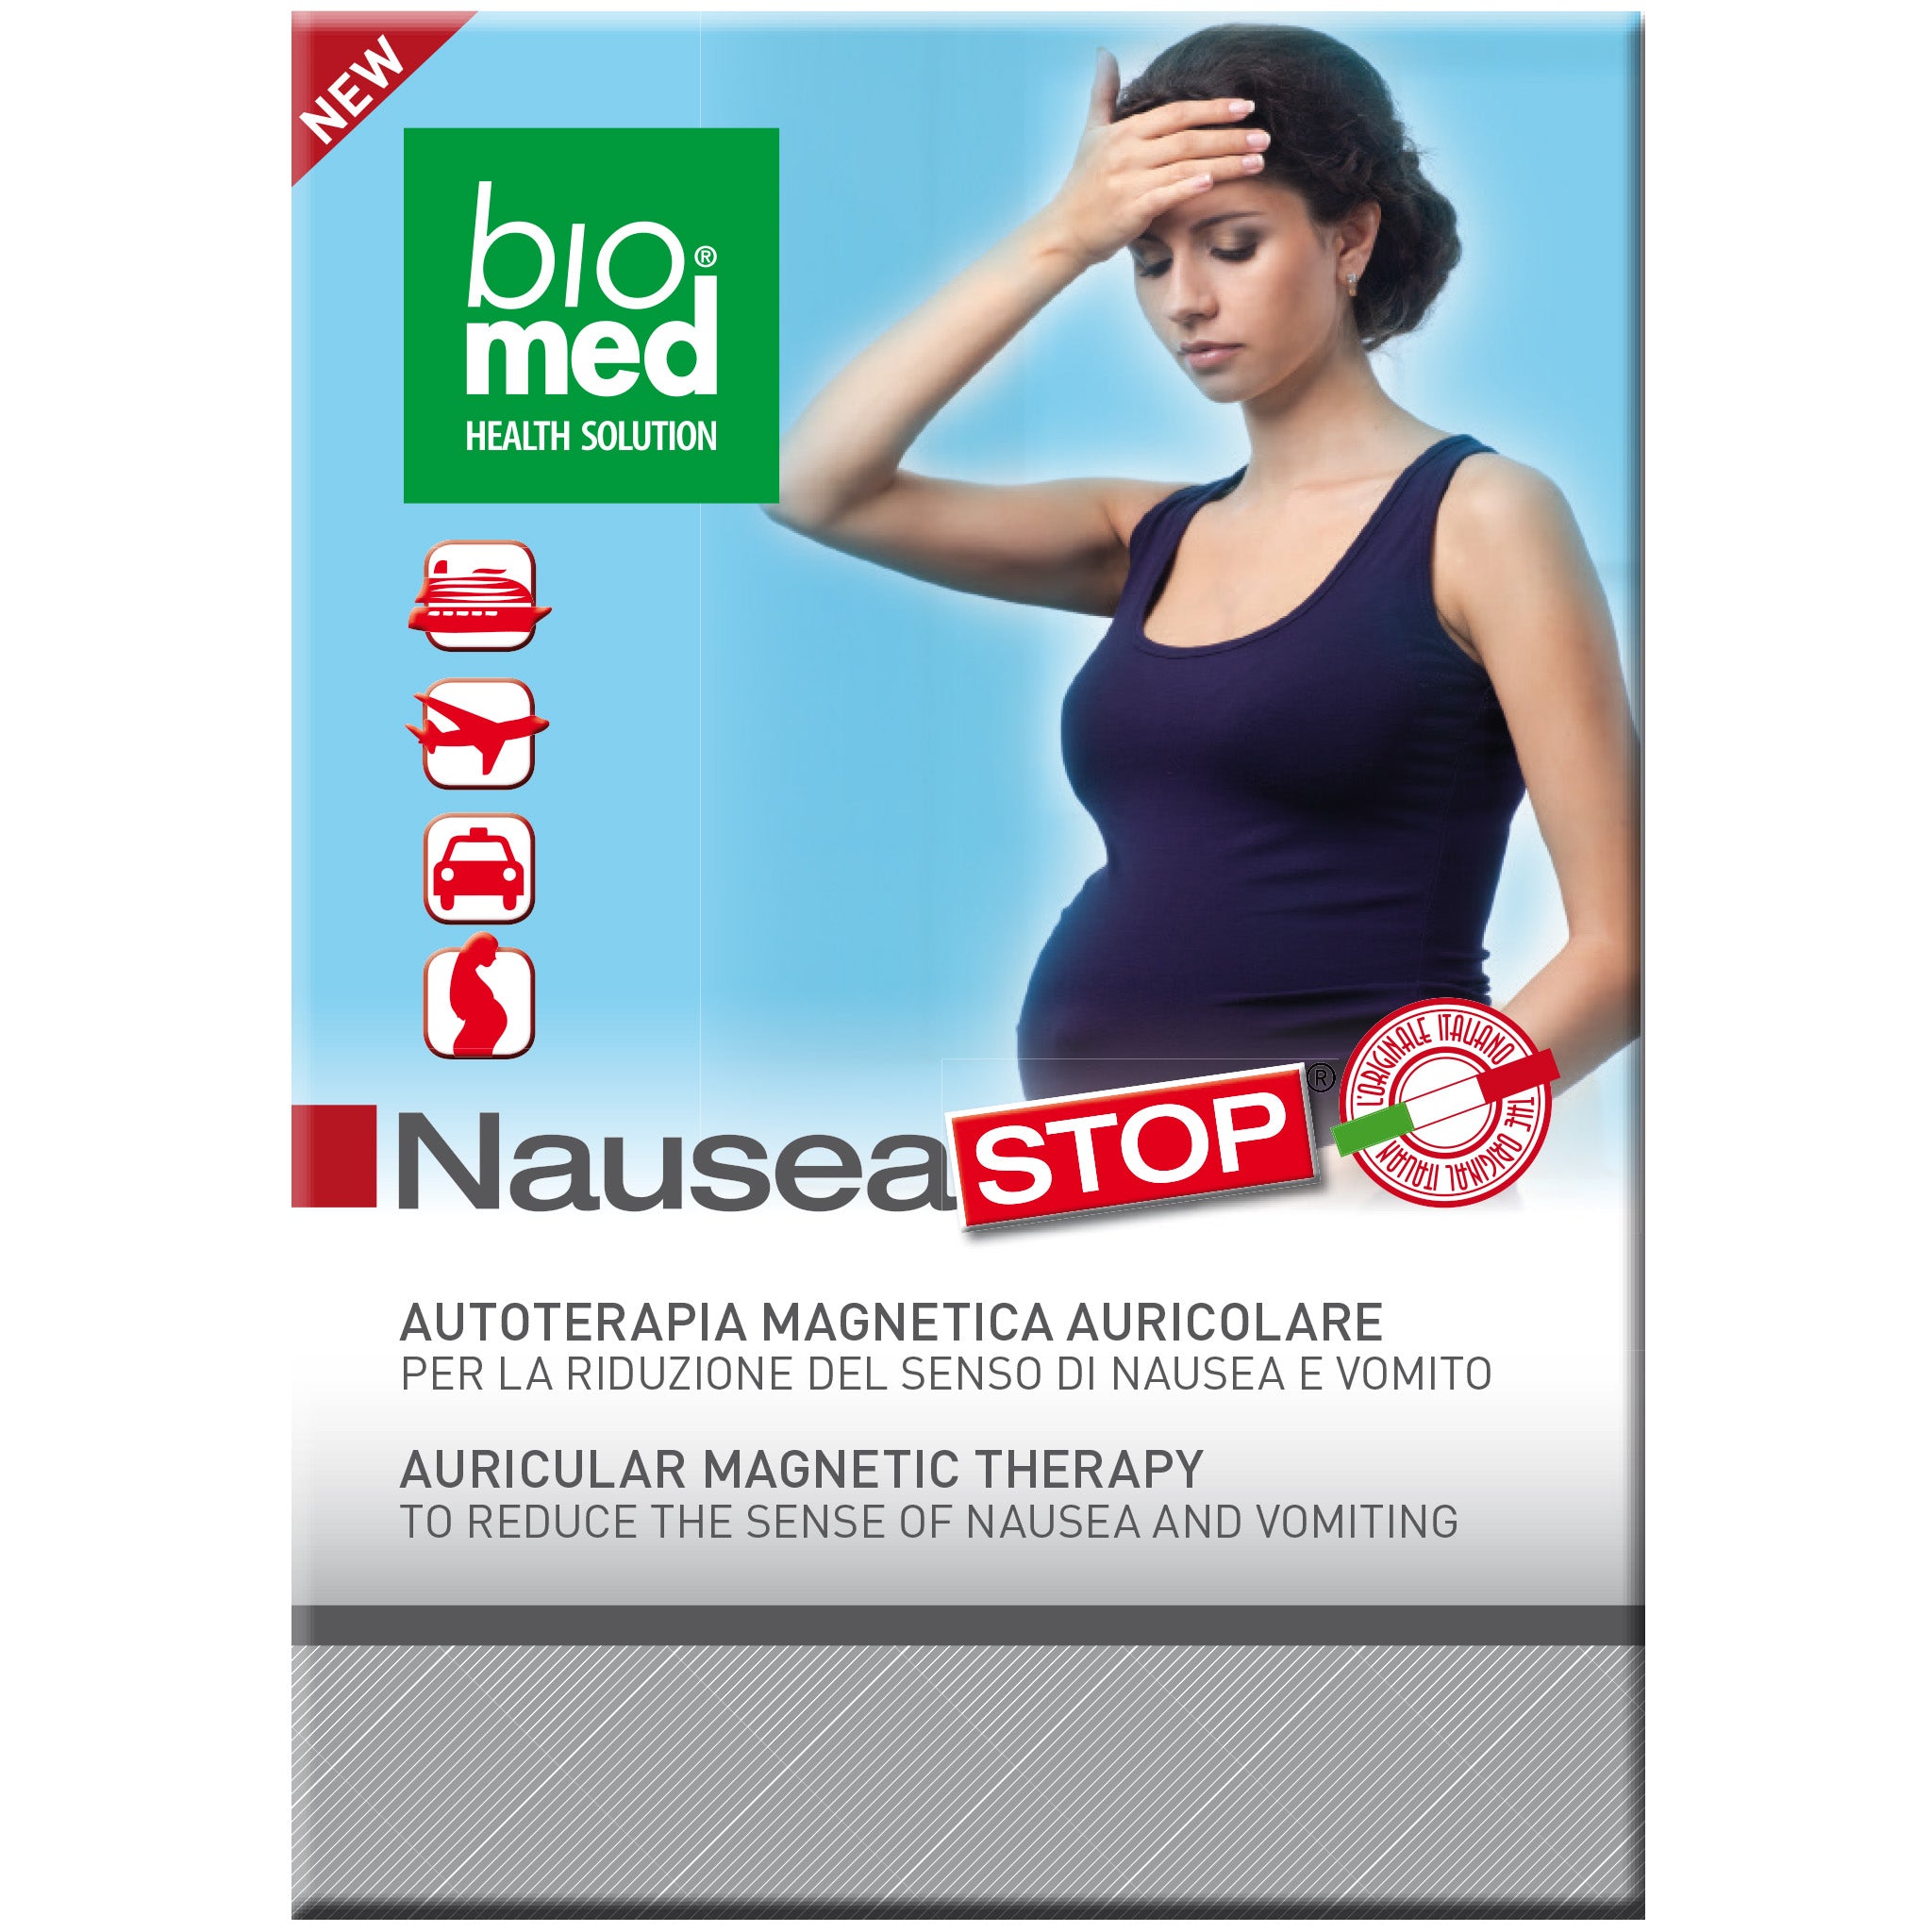 nausea stop - ti aiuta a ridurre il senso di nausea - biomed auricoloterapia